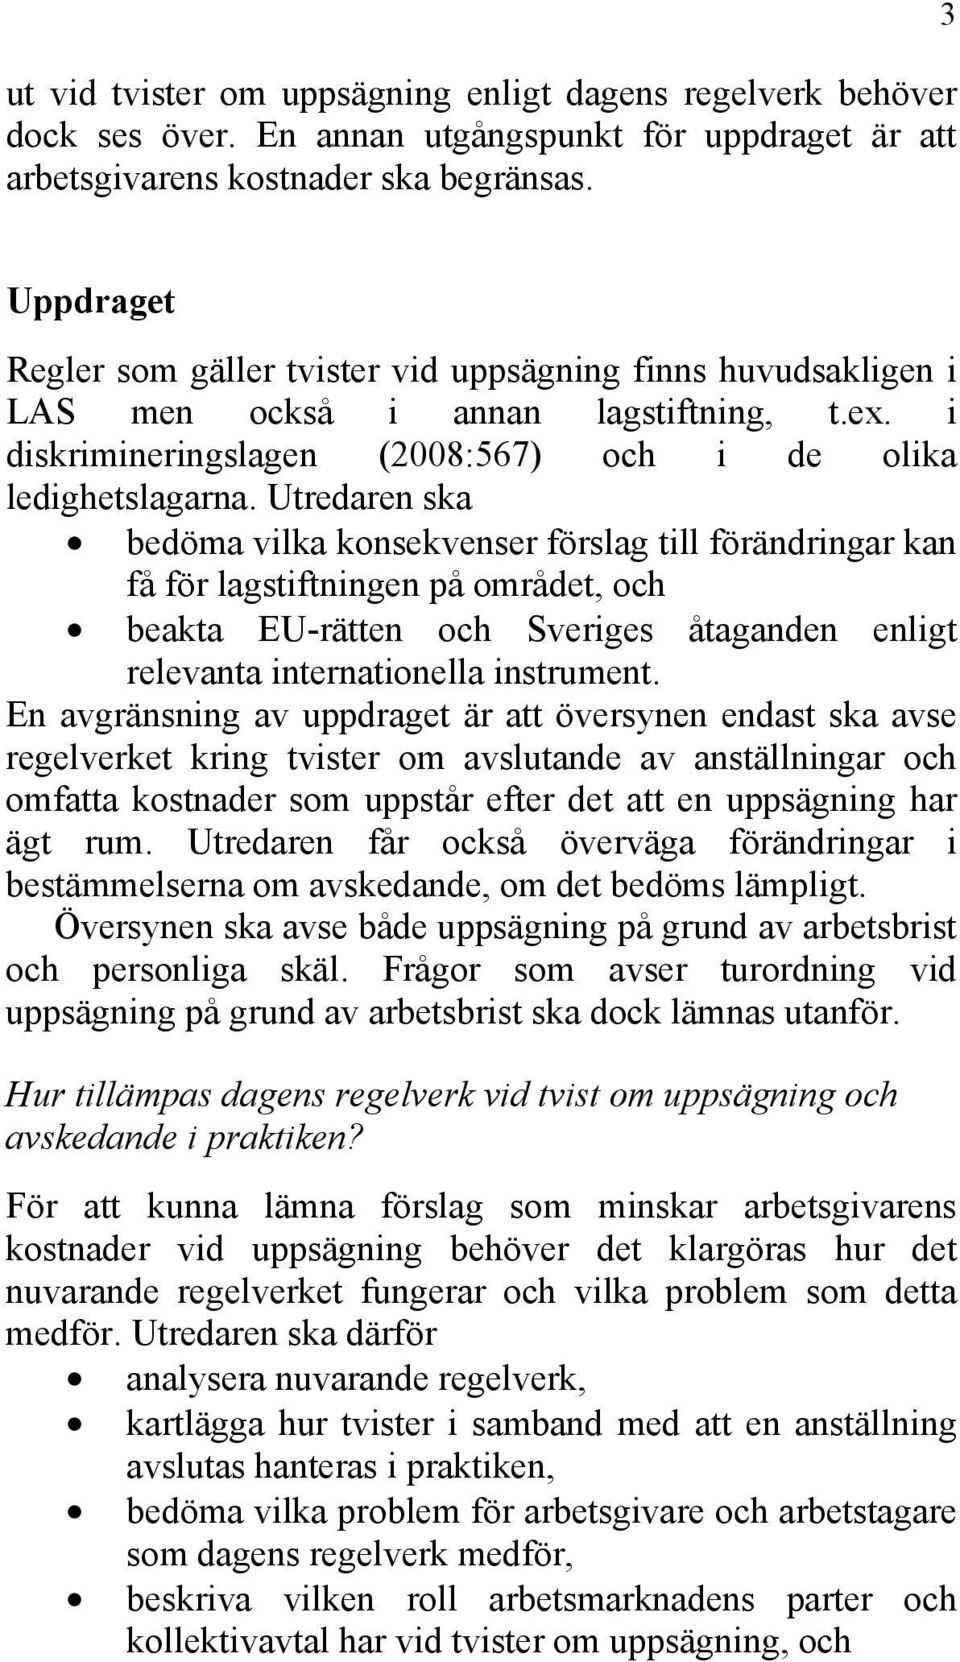 Utredaren ska bedöma vilka konsekvenser förslag till förändringar kan få för lagstiftningen på området, och beakta EU-rätten och Sveriges åtaganden enligt relevanta internationella instrument.